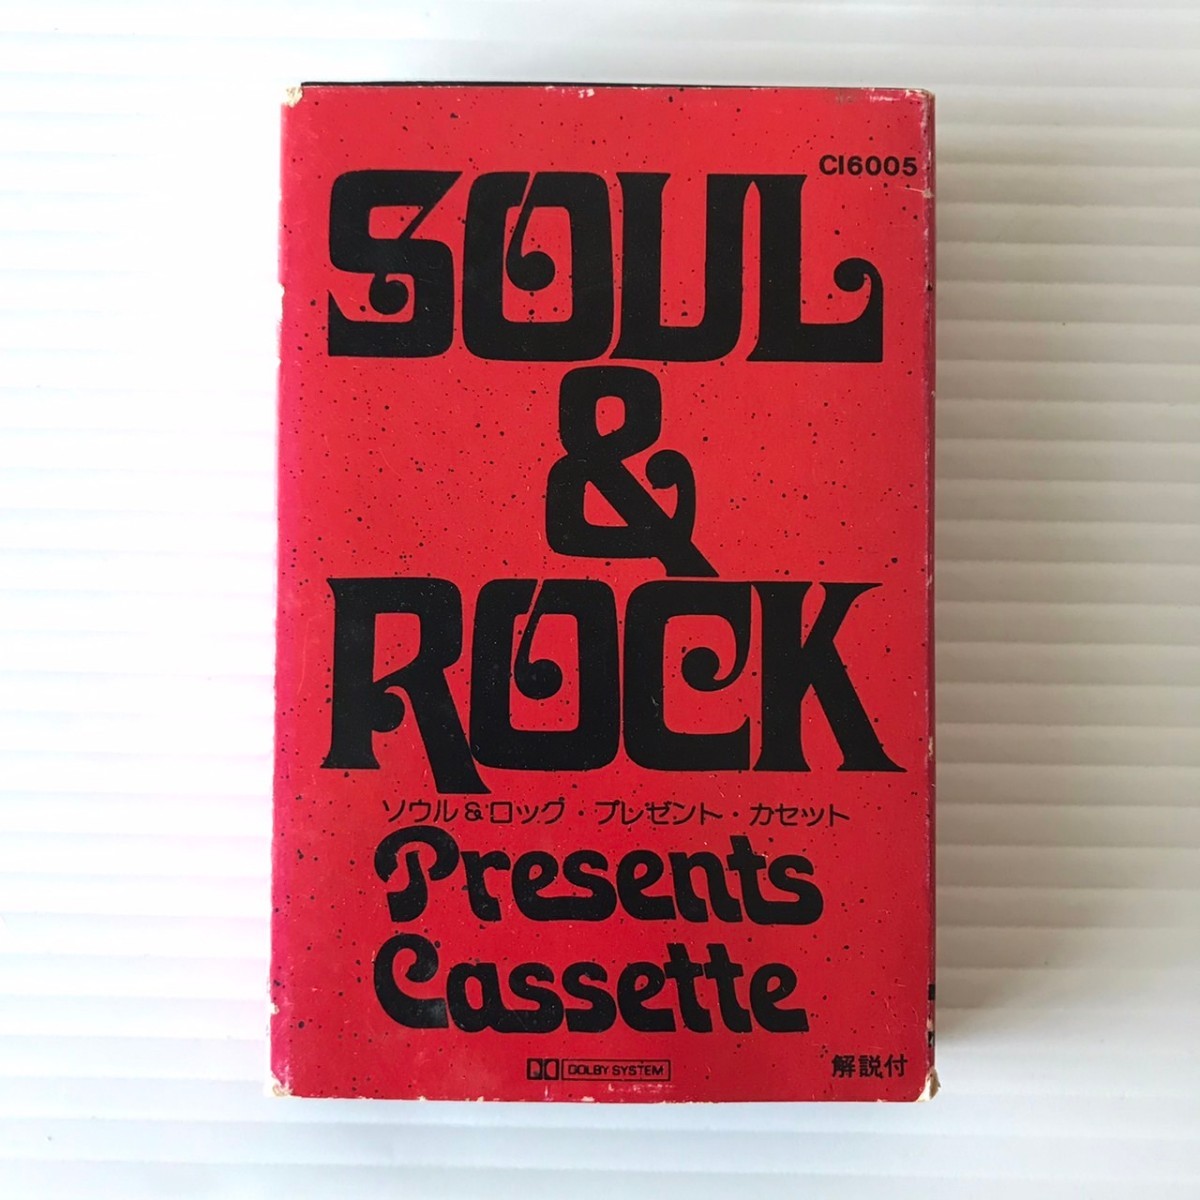 カセットテープ 成毛滋のロックギターレッスン SOUL&ROCK Presents Cassette ソウル & ロック プレゼント カセット テープ 昭和レトロ_画像5